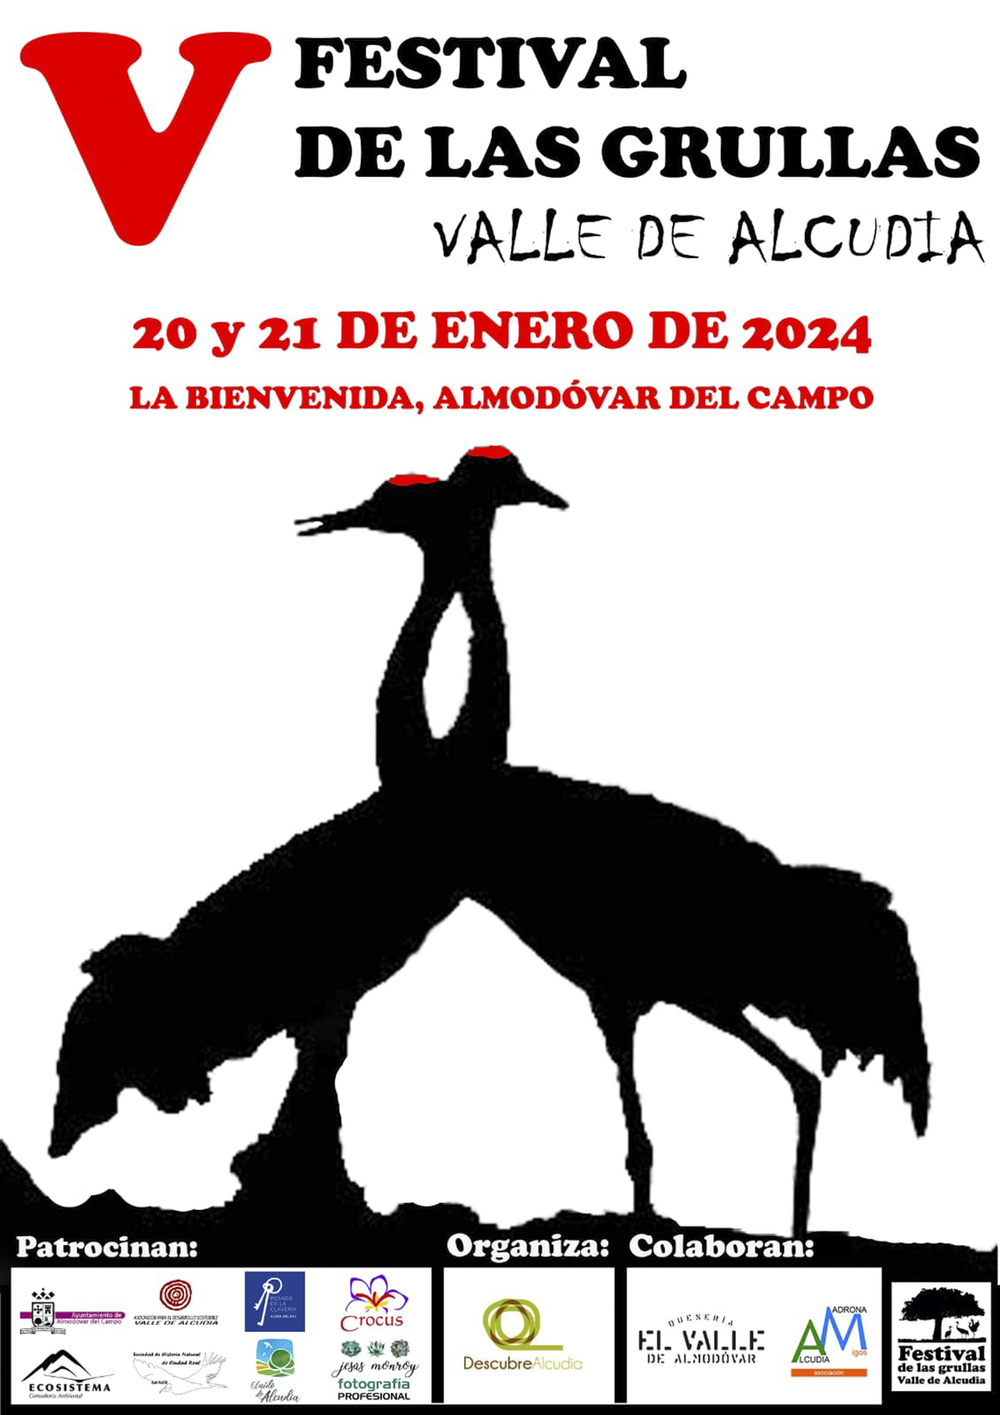 El Festival de Grullas del Valle de Alcudia, 20 y 21 de enero